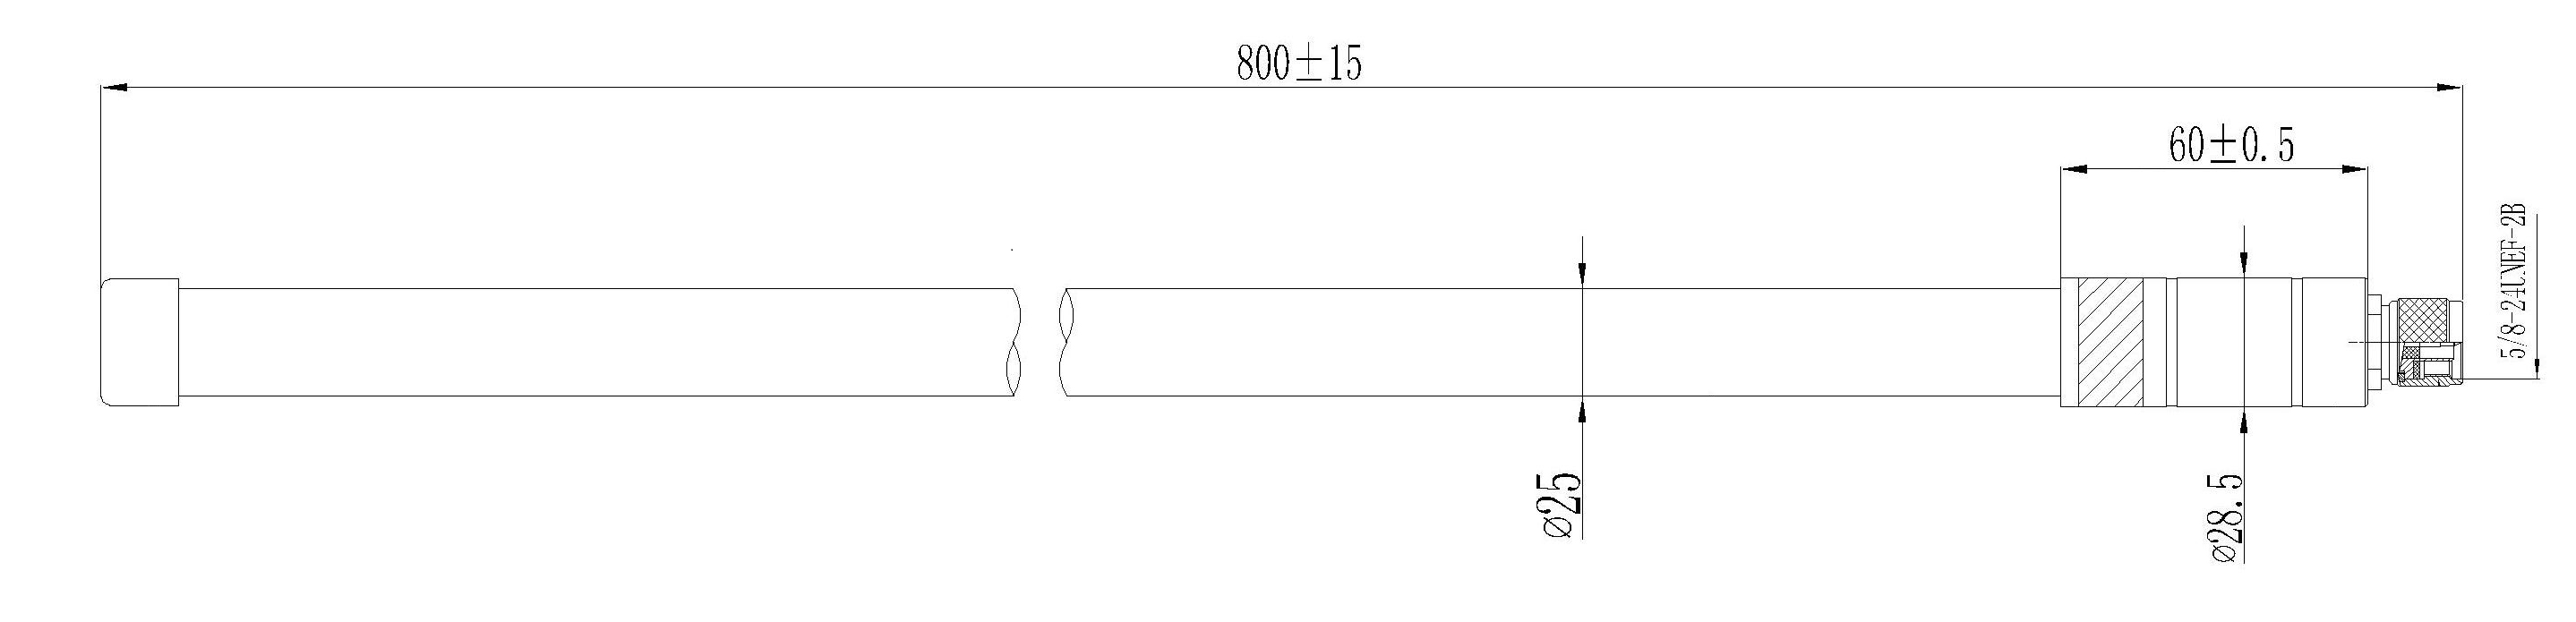 Antenne fibre de verre LoRa Type N - 5,8 dBi (863-870 MHz) - Cliquez pour agrandir